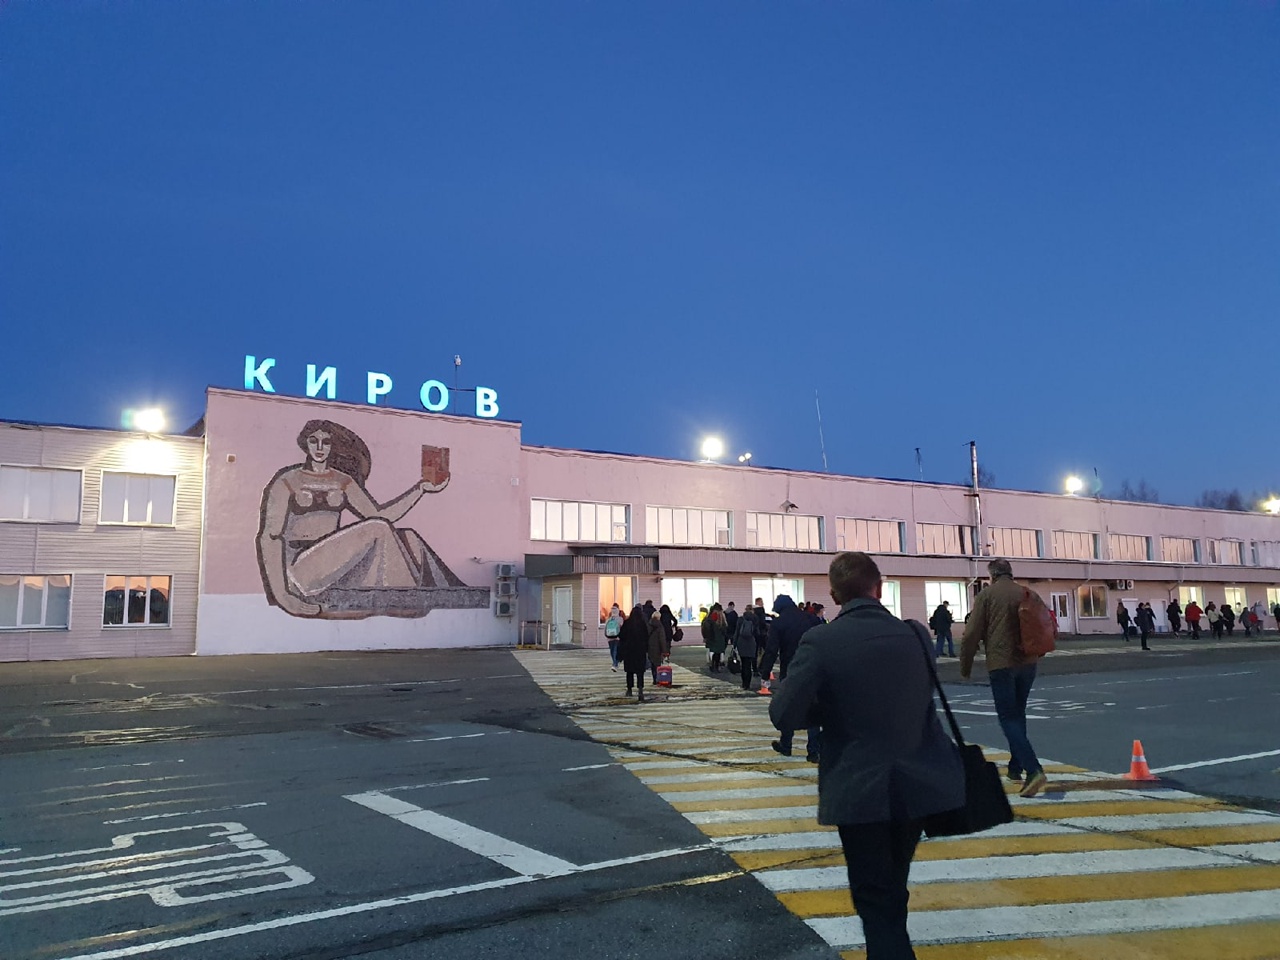 В Кирове появится праздничная подсветка города